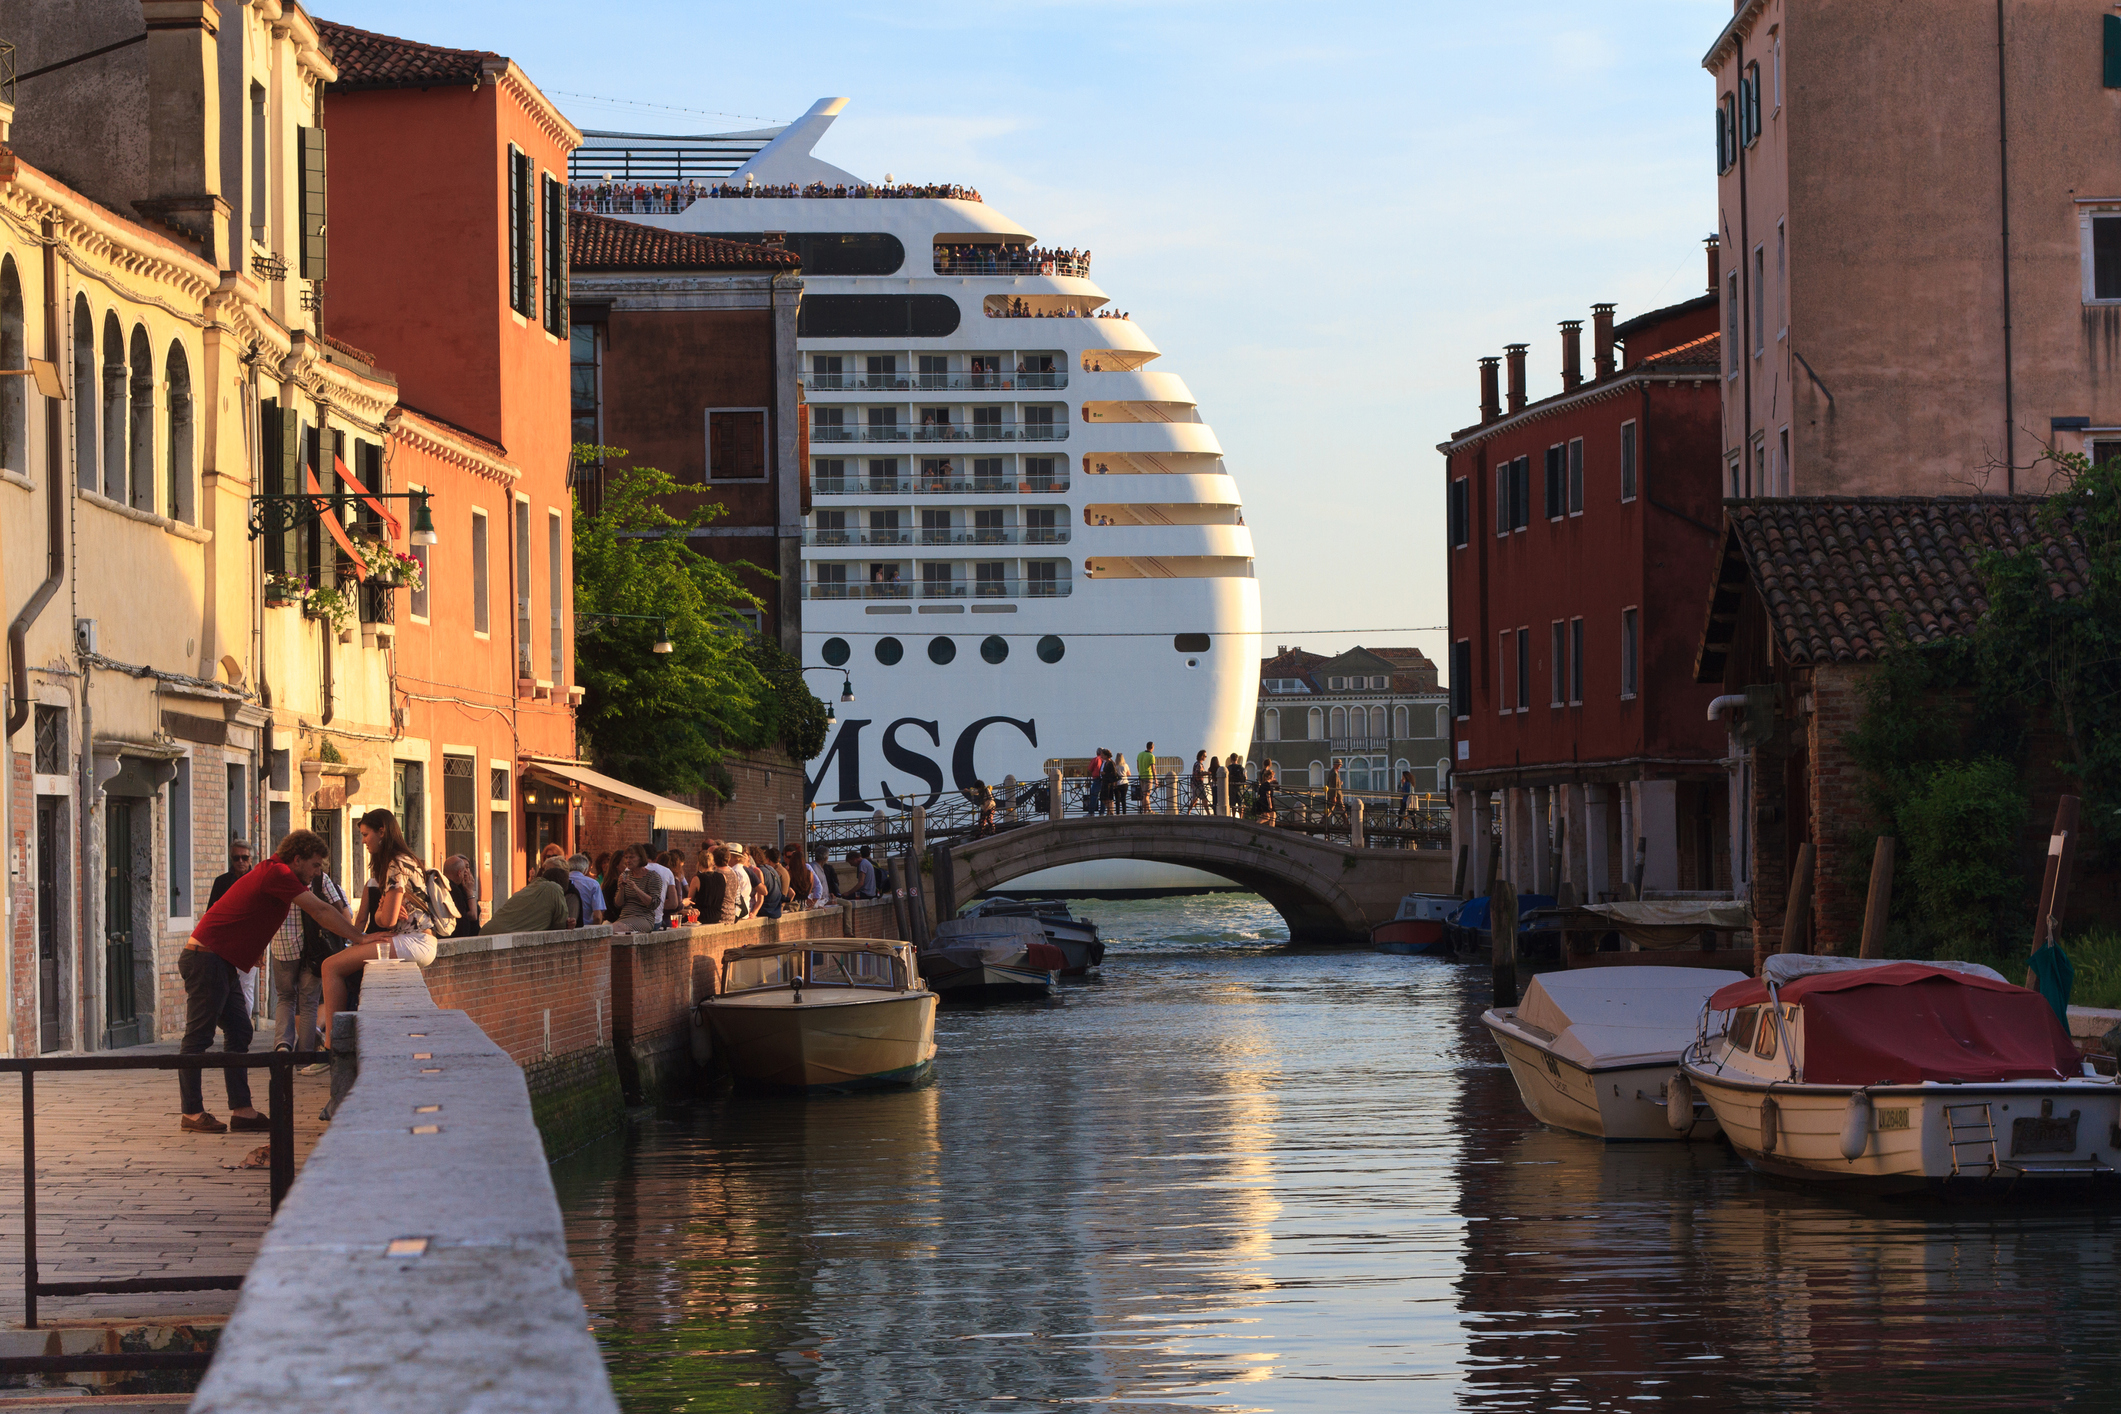 Î‘Ï€Î¿Ï„Î­Î»ÎµÏƒÎ¼Î± ÎµÎ¹ÎºÏŒÎ½Î±Ï‚ Î³Î¹Î± GlobalData: Stop cruise ships docking in Venice city center